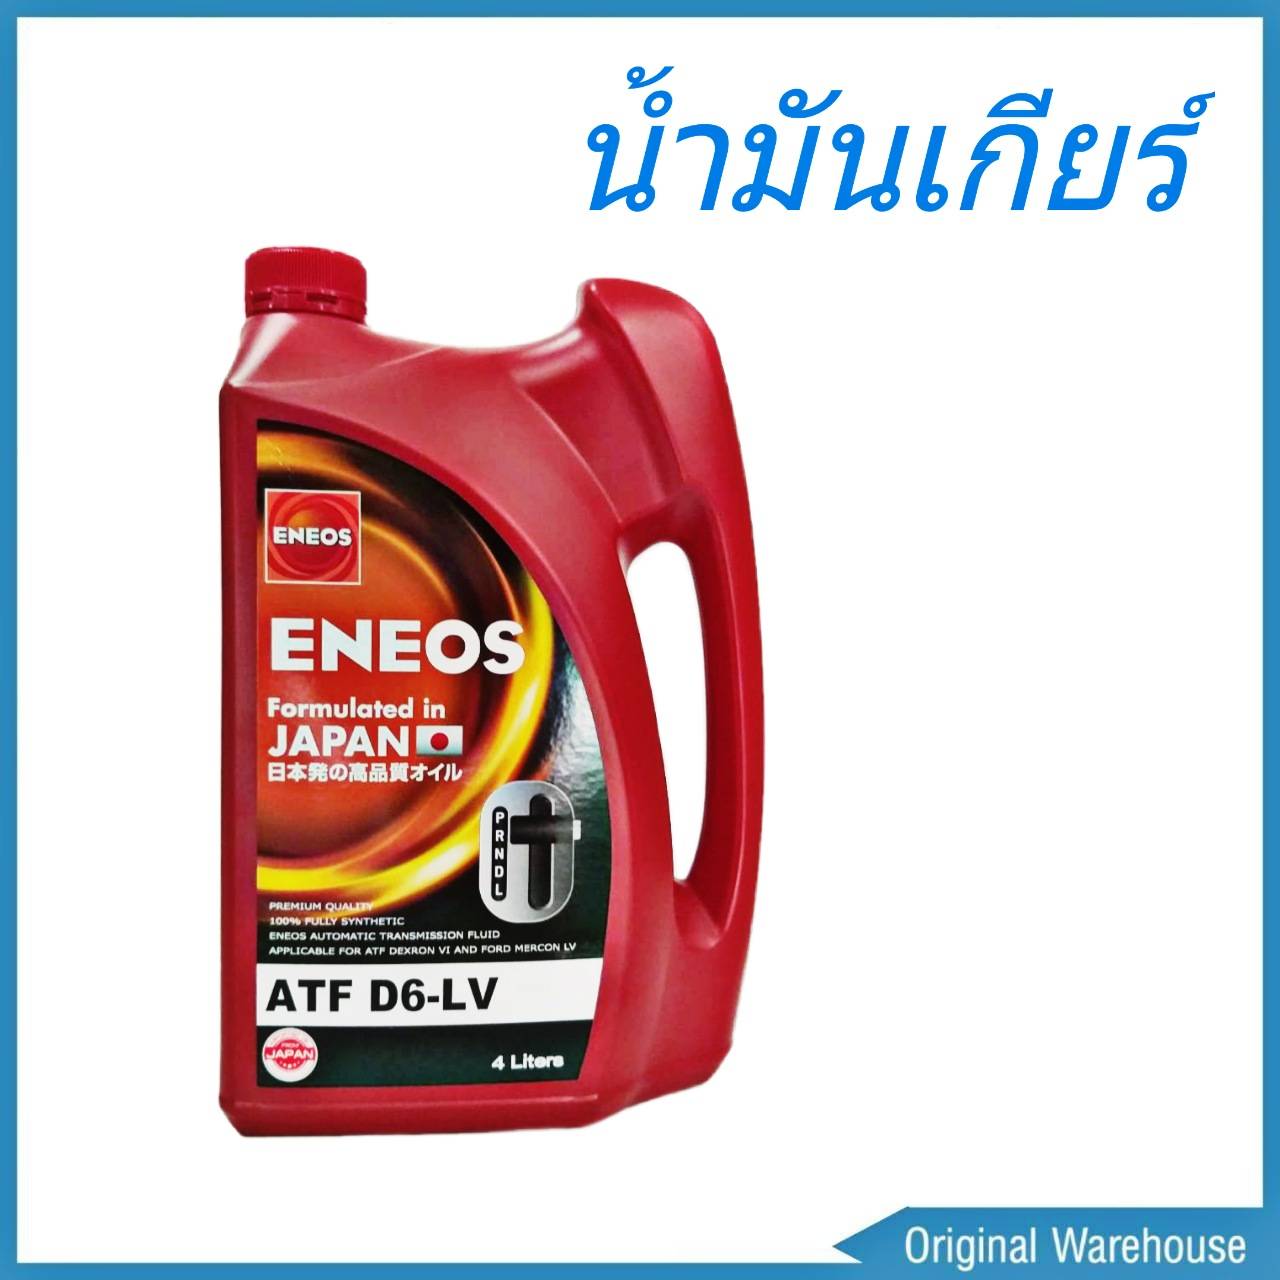 น้ำมันเกียร์ออโต้ ENEOS ATF D6-LV น้ำมันเกียร์อัตโนมัติ เด็กซ์รอน 6 ปริมาตร 4ลิตร